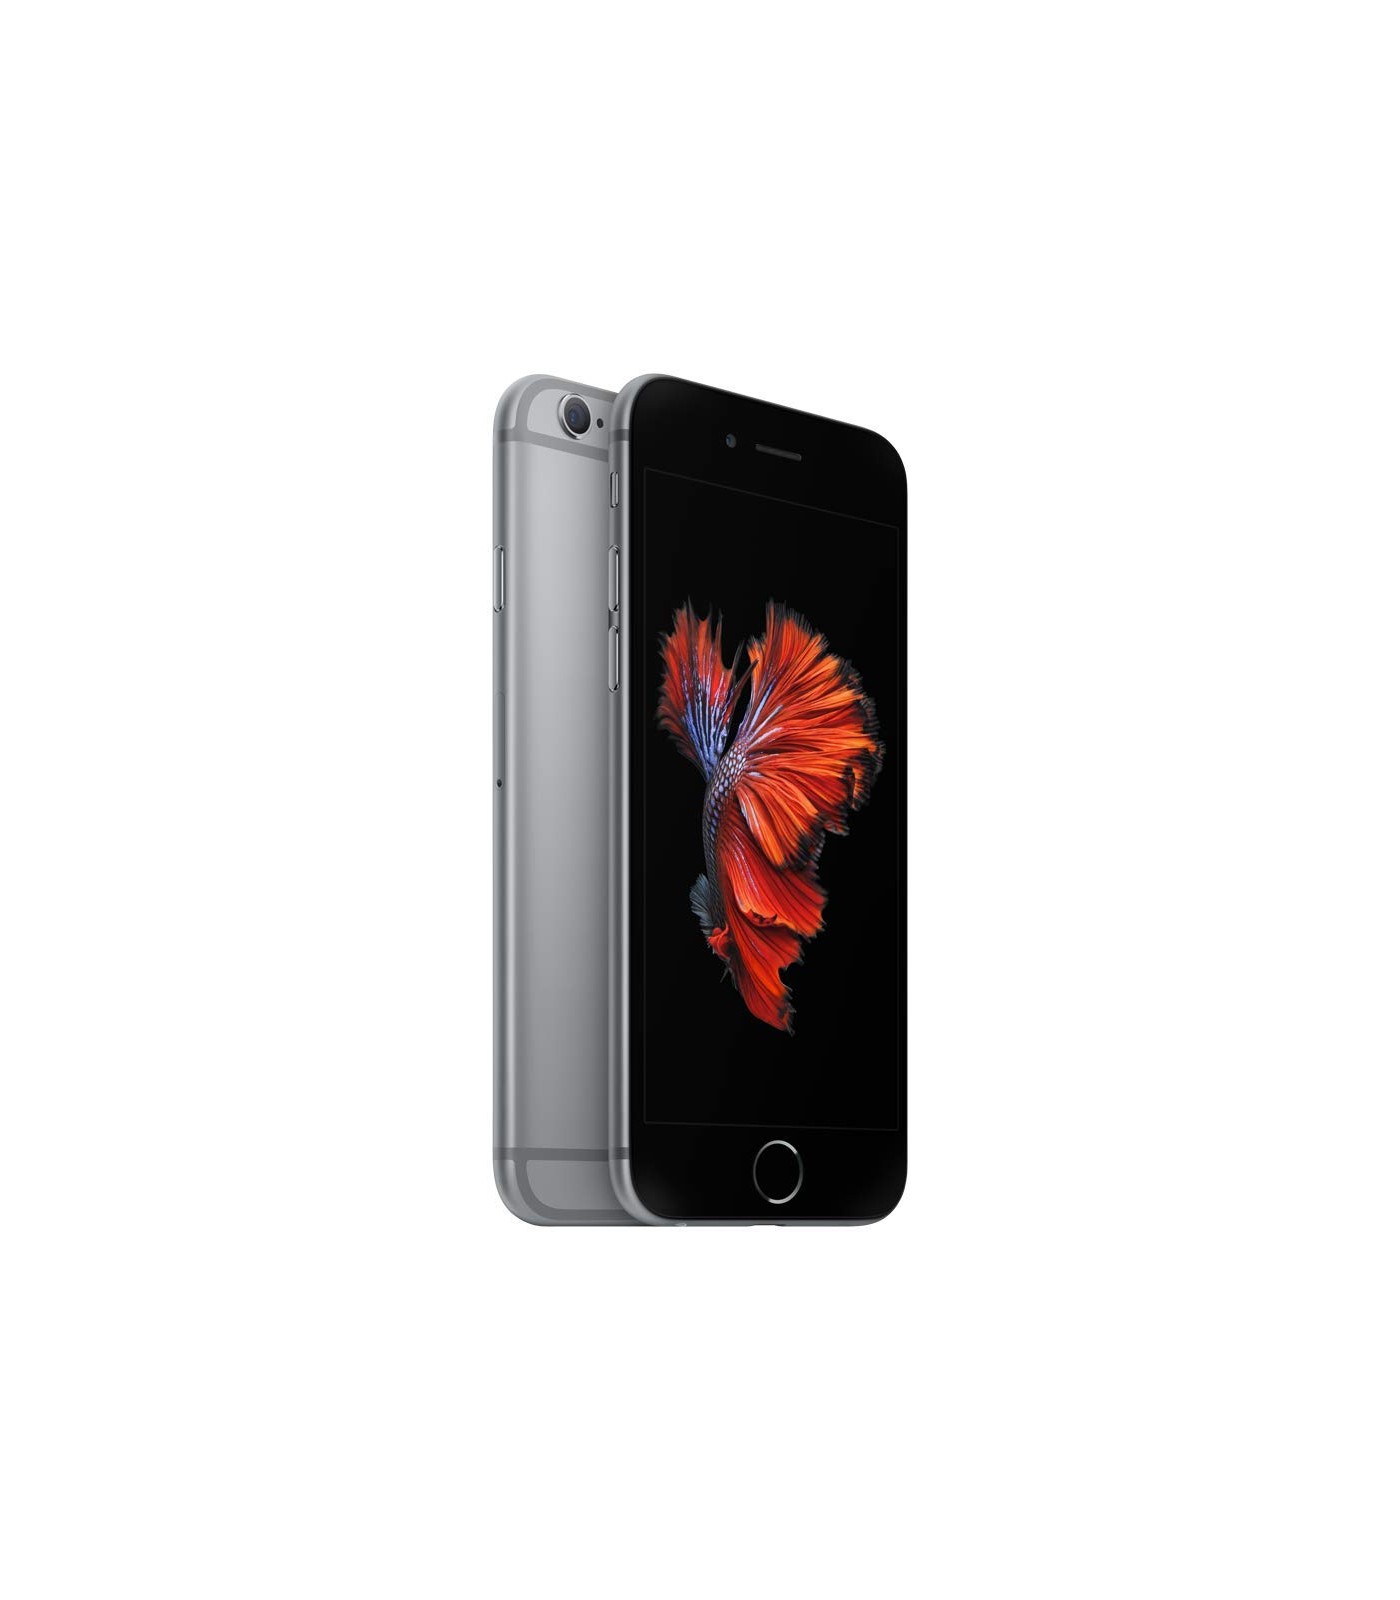 Poleasingowy smartfon iPhone 6s z 4,7 calowym ekranem i procesorem Apple Dual-Core A9 w klasie B.